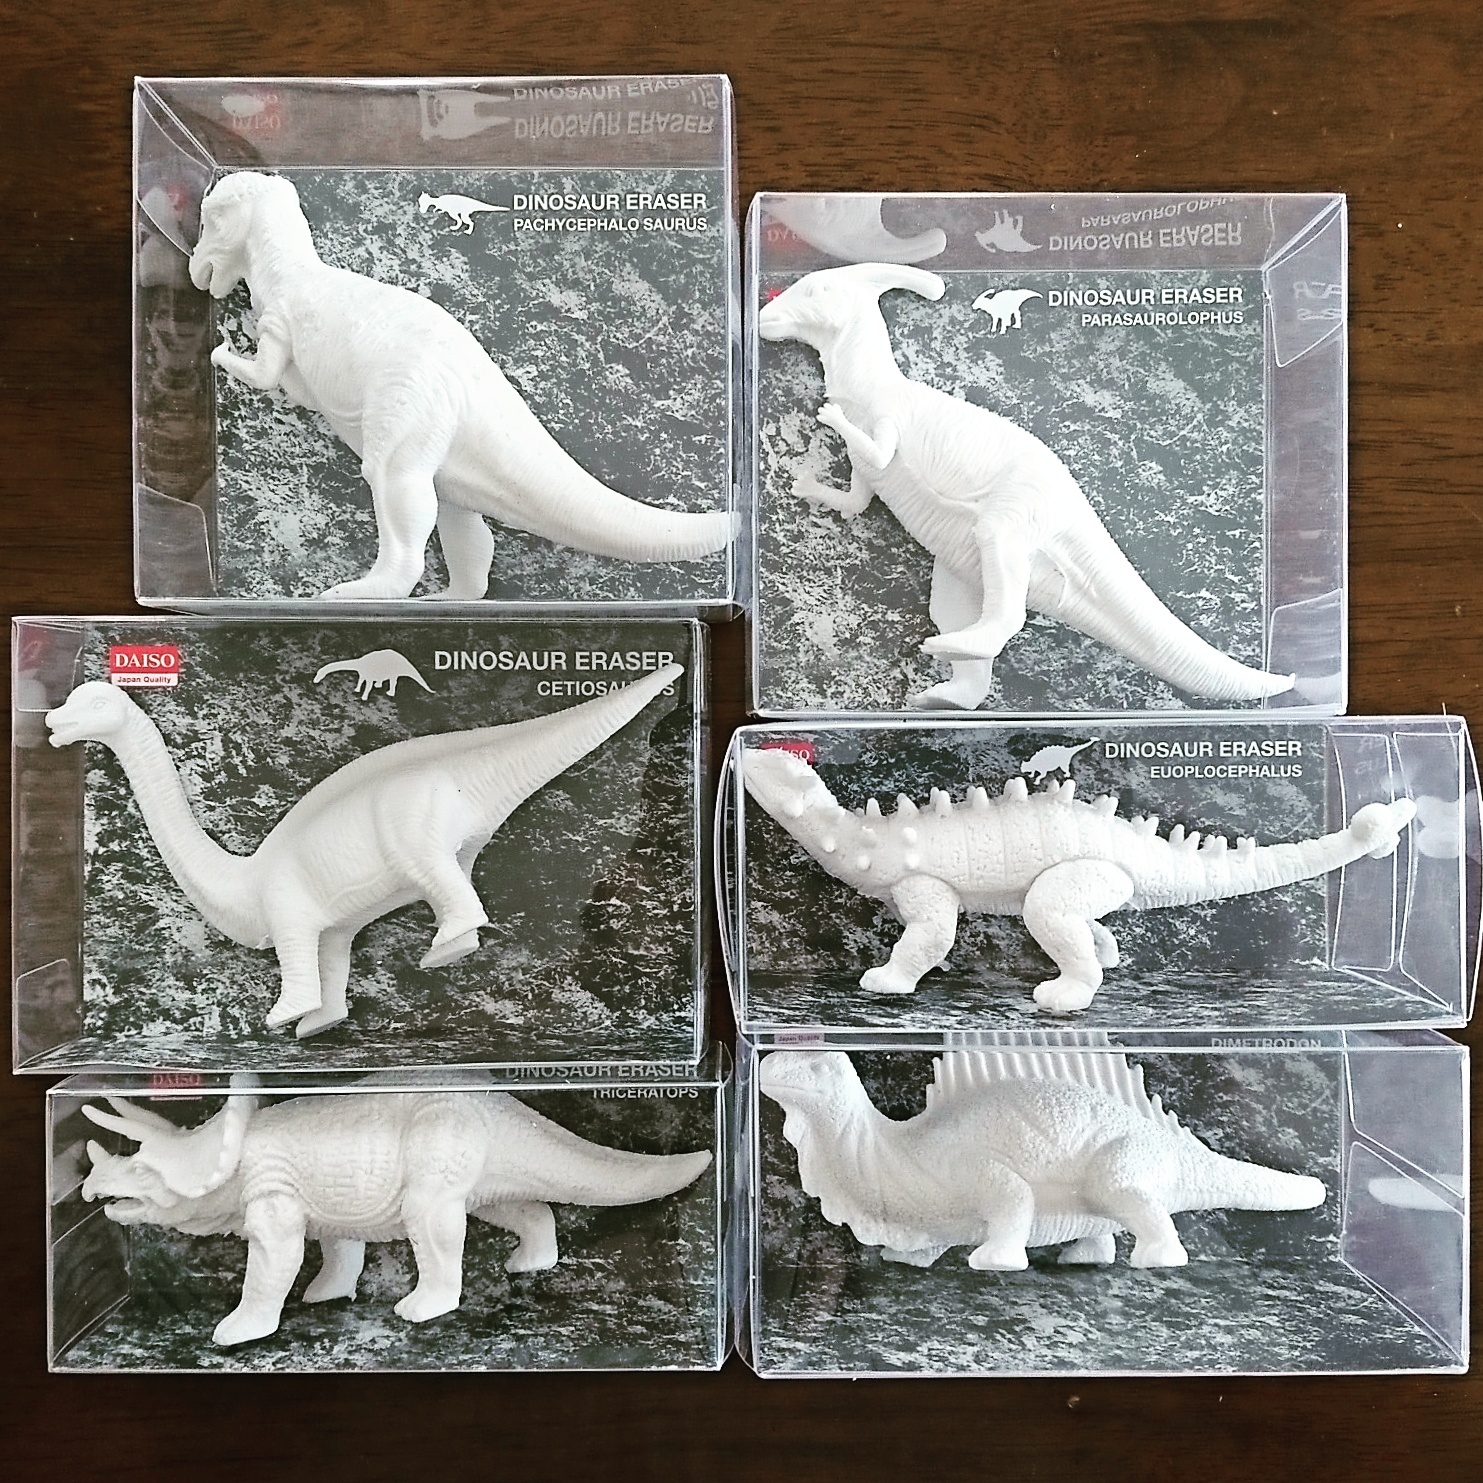 ダイソー5月の新作 動物と恐竜の立体消しゴム - 消しゴムカフェ 